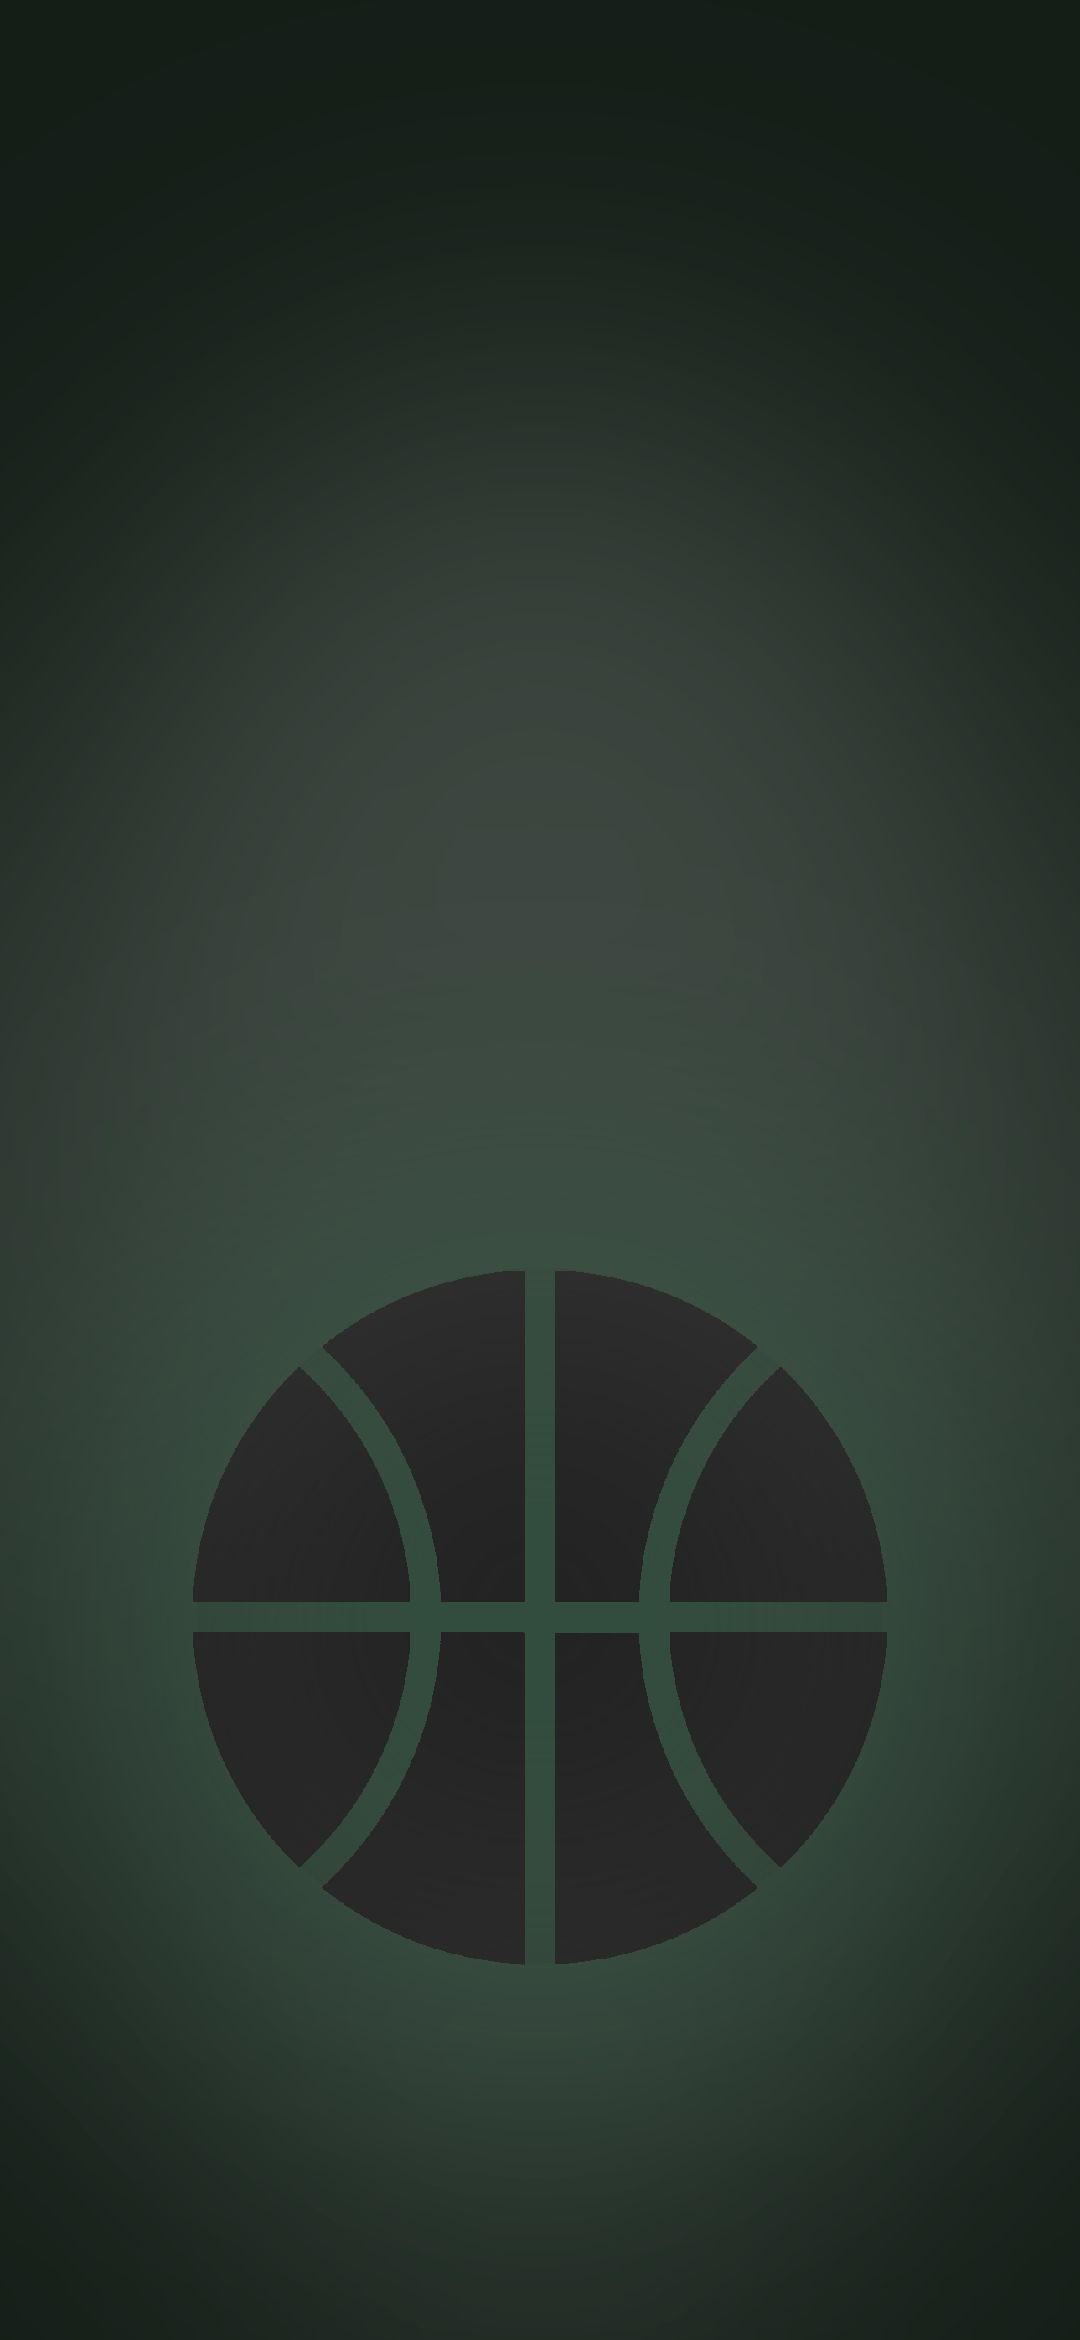 バスケのボール 緑の背景 Google Pixel 4a Android 壁紙 待ち受け Sumaran